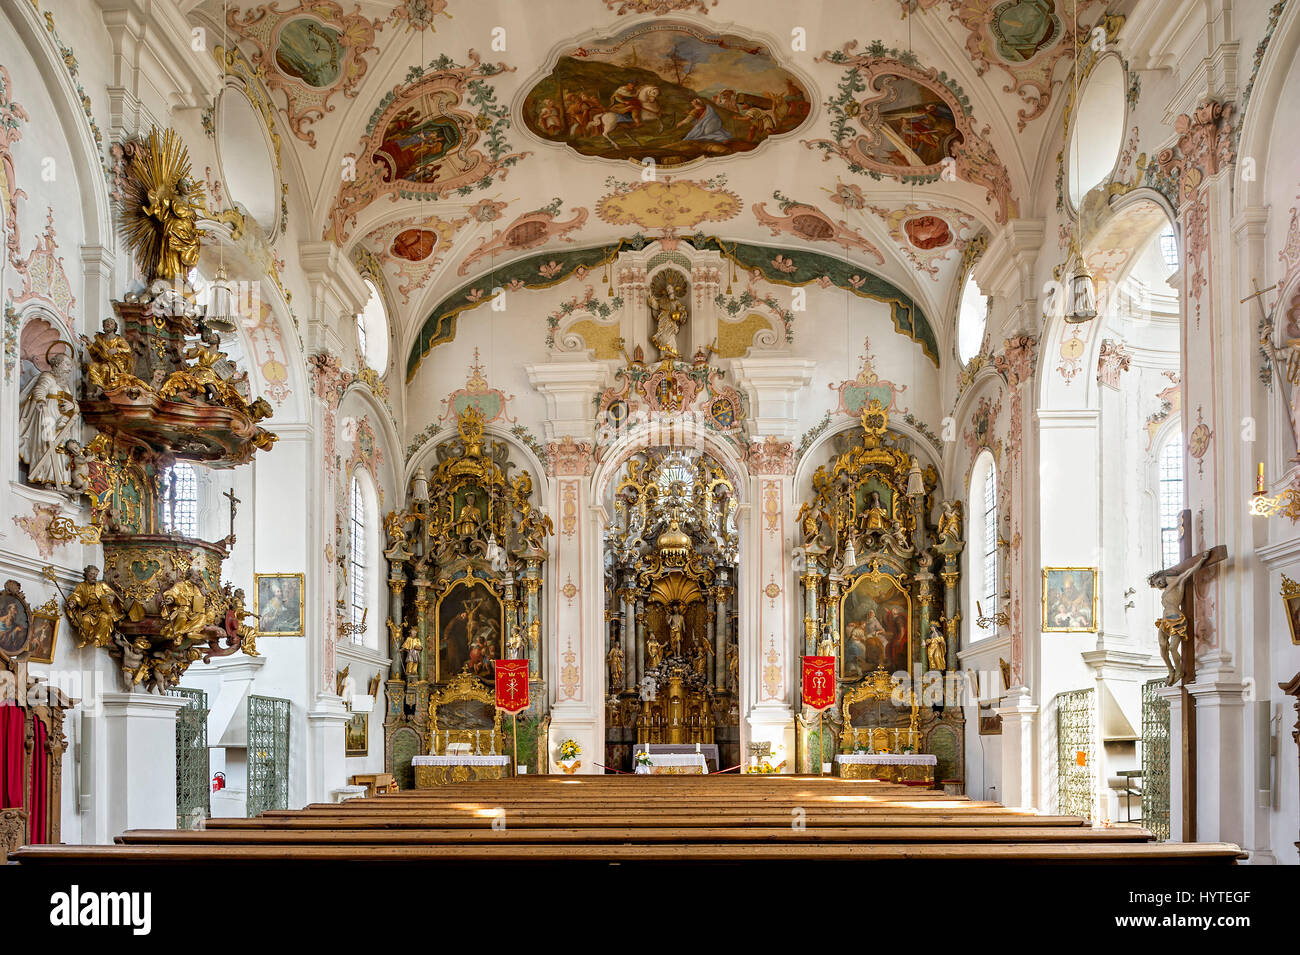 Église de pèlerinage de Maria Hilf, nef, de l'intérieur rococo, Klosterlechfeld, souabe, Bavière, Allemagne Banque D'Images